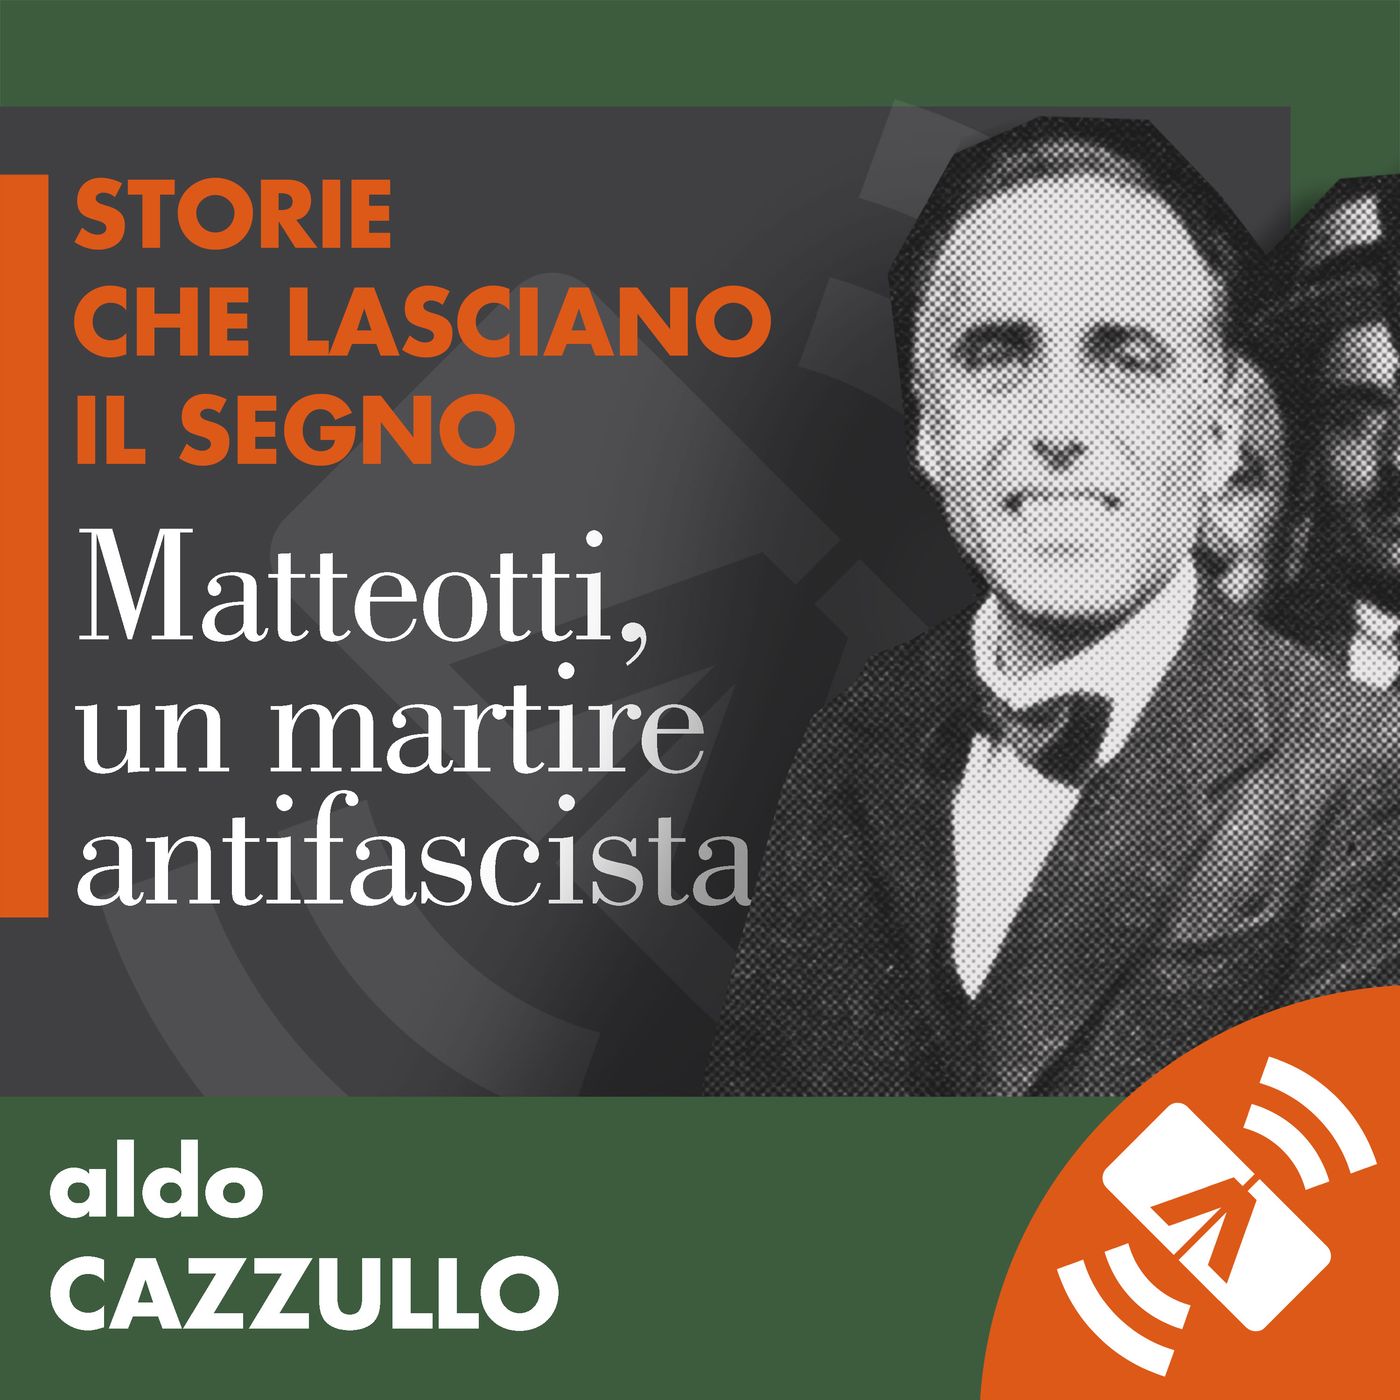 29 > Aldo CAZZULLO "Matteotti: un martire antifascista"